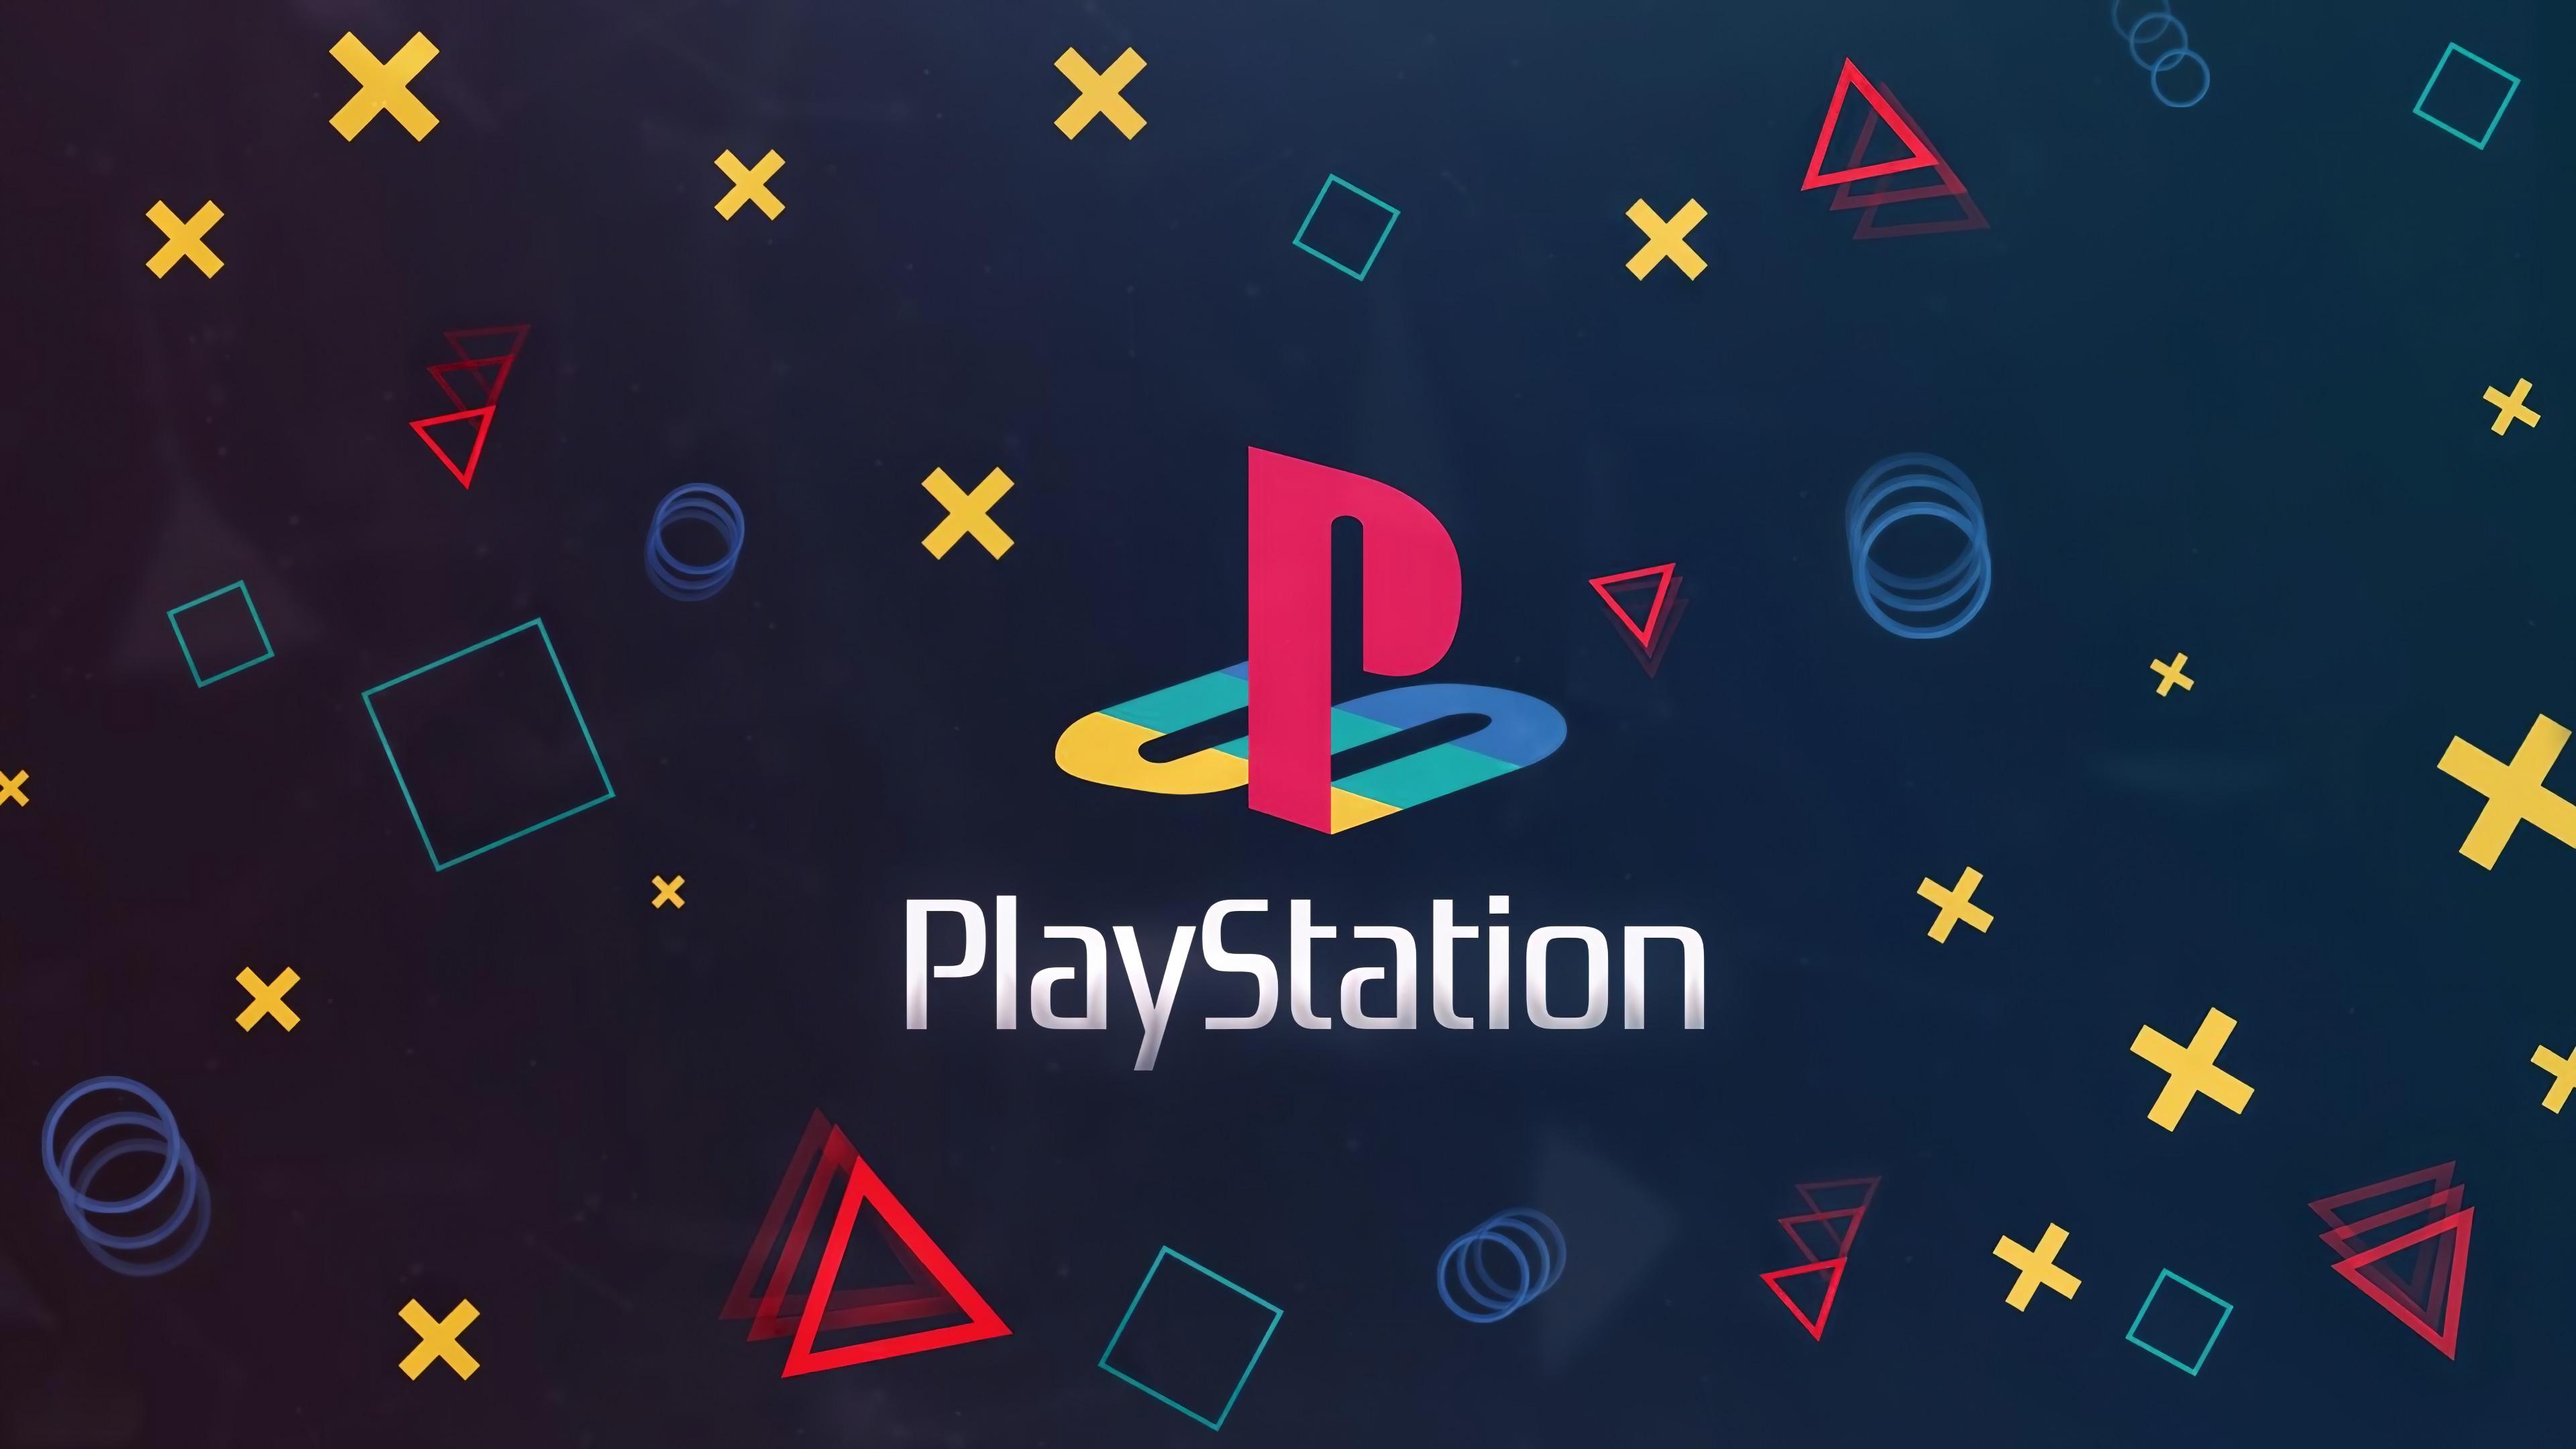 PlayStation-Logo auf dunklem Hintergrund mit verschiedenen Controller-Tasten.